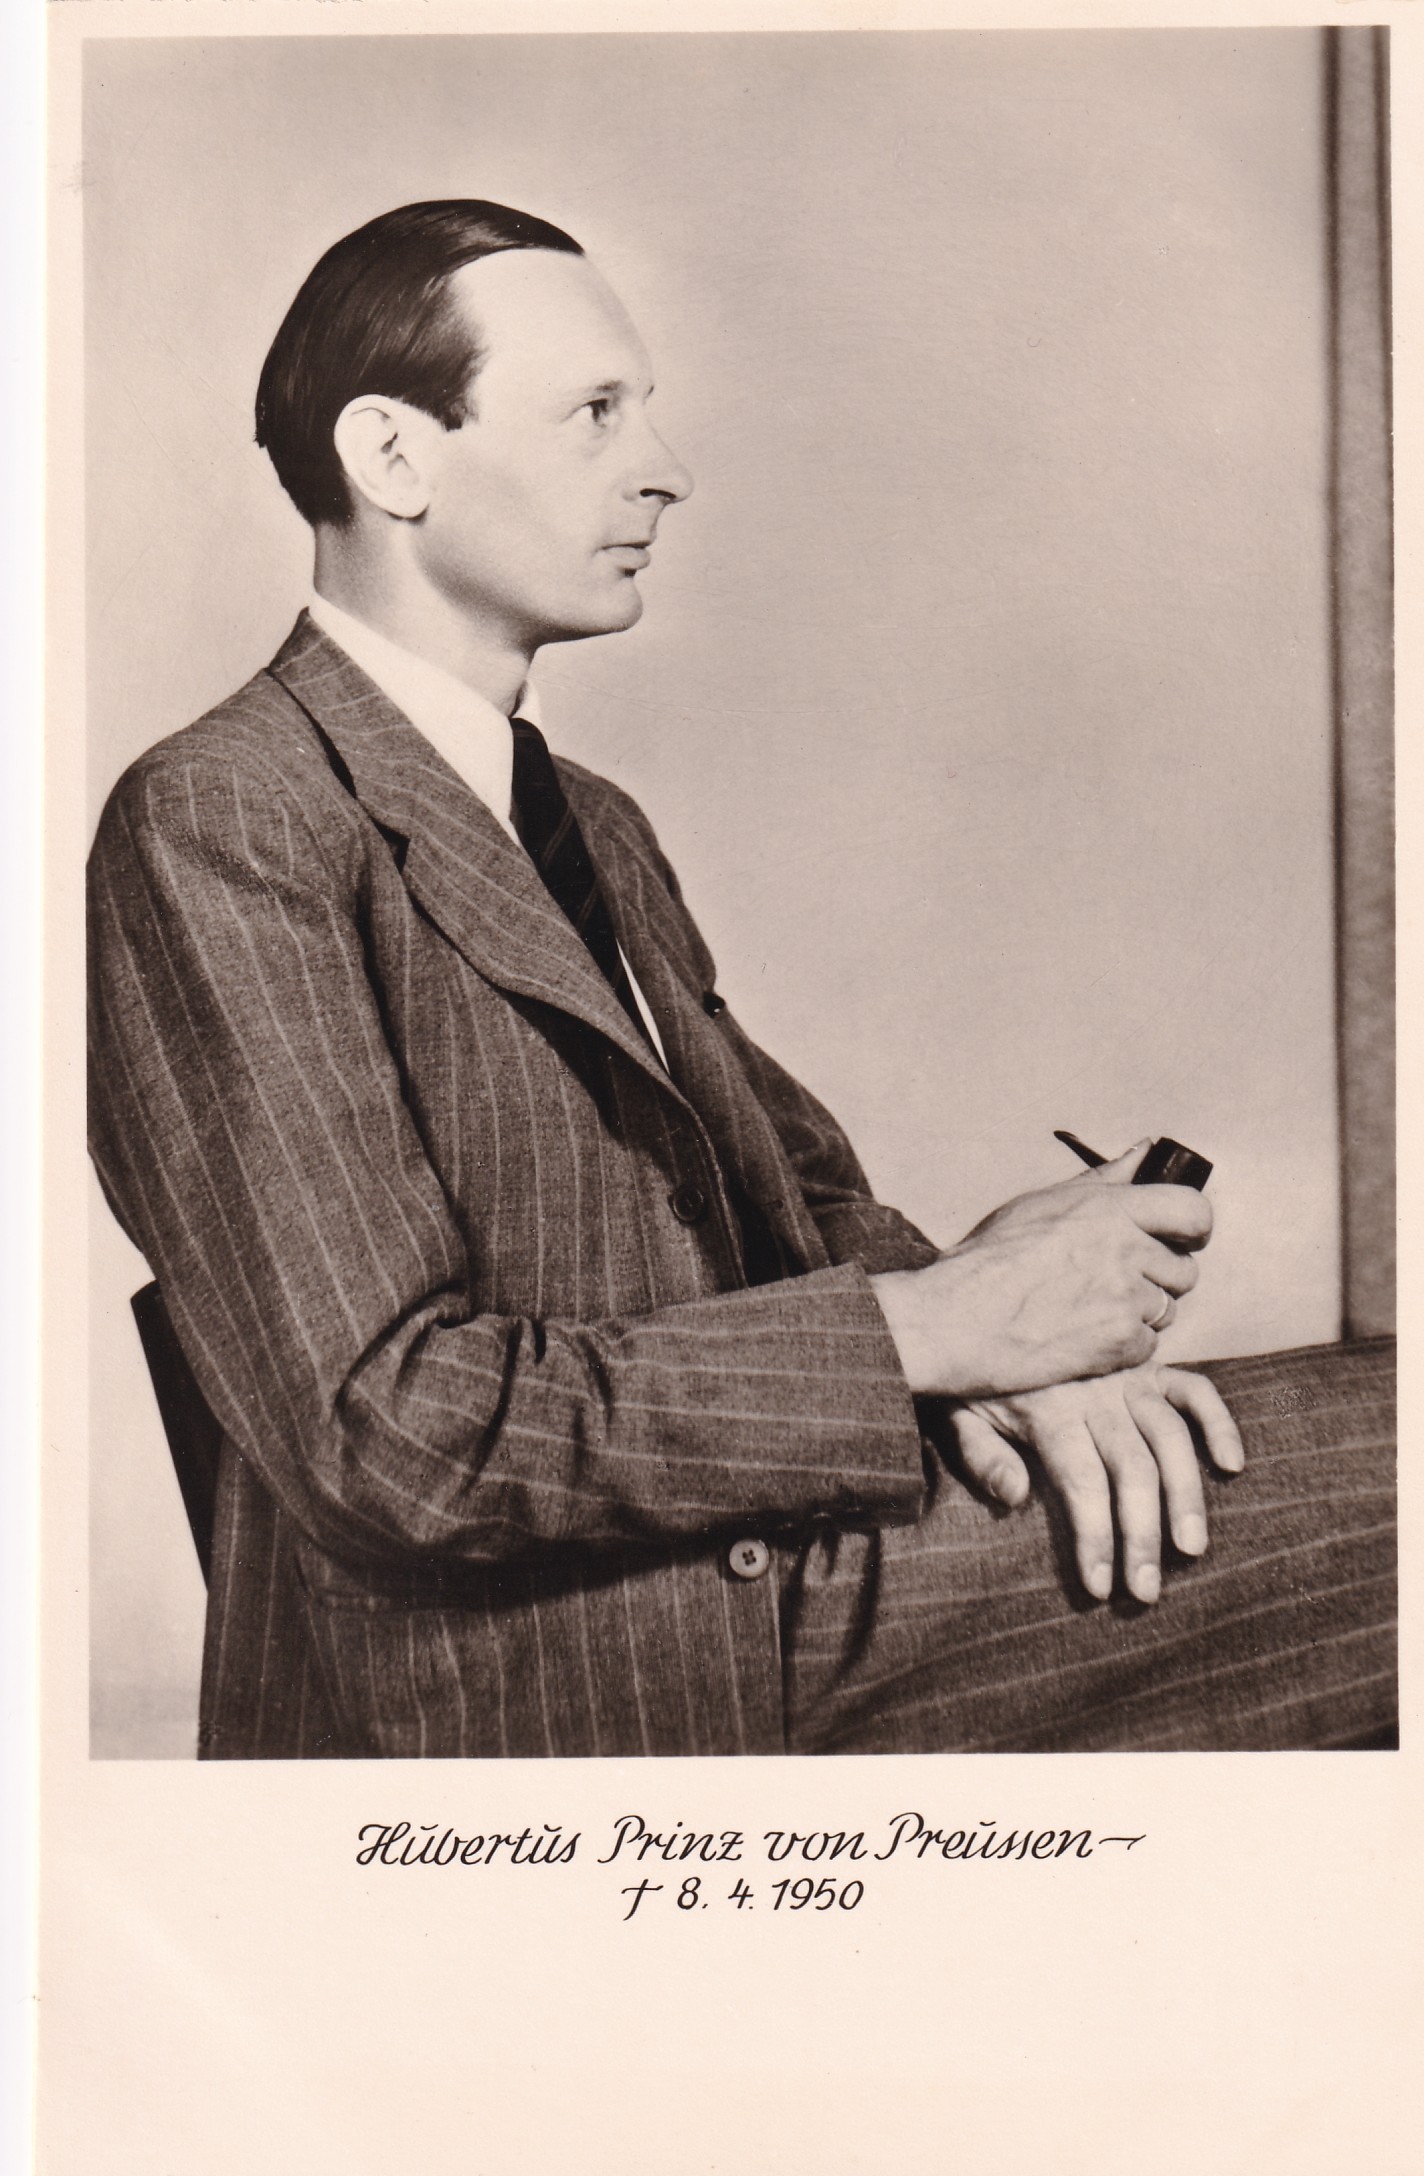 Bildpostkarte mit Foto des Prinzen Hubertus von Preußen (1909-1950), um 1950 (Schloß Wernigerode GmbH RR-F)